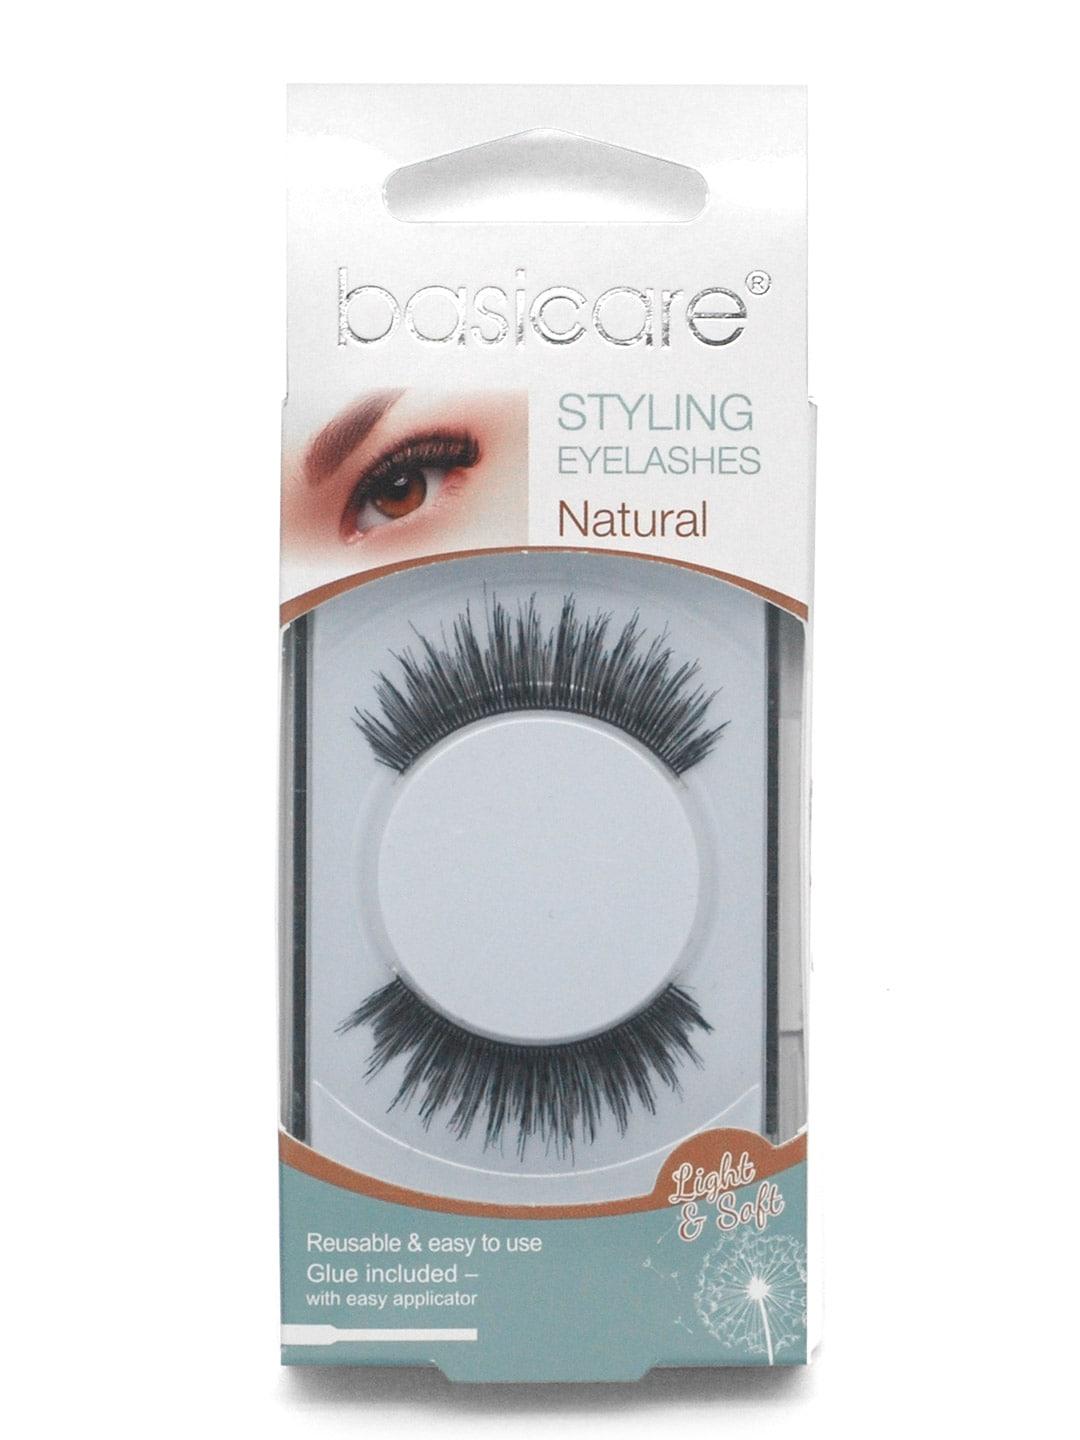 basicare Black Styling Eyelashes With Latex Glue & Nature Hair